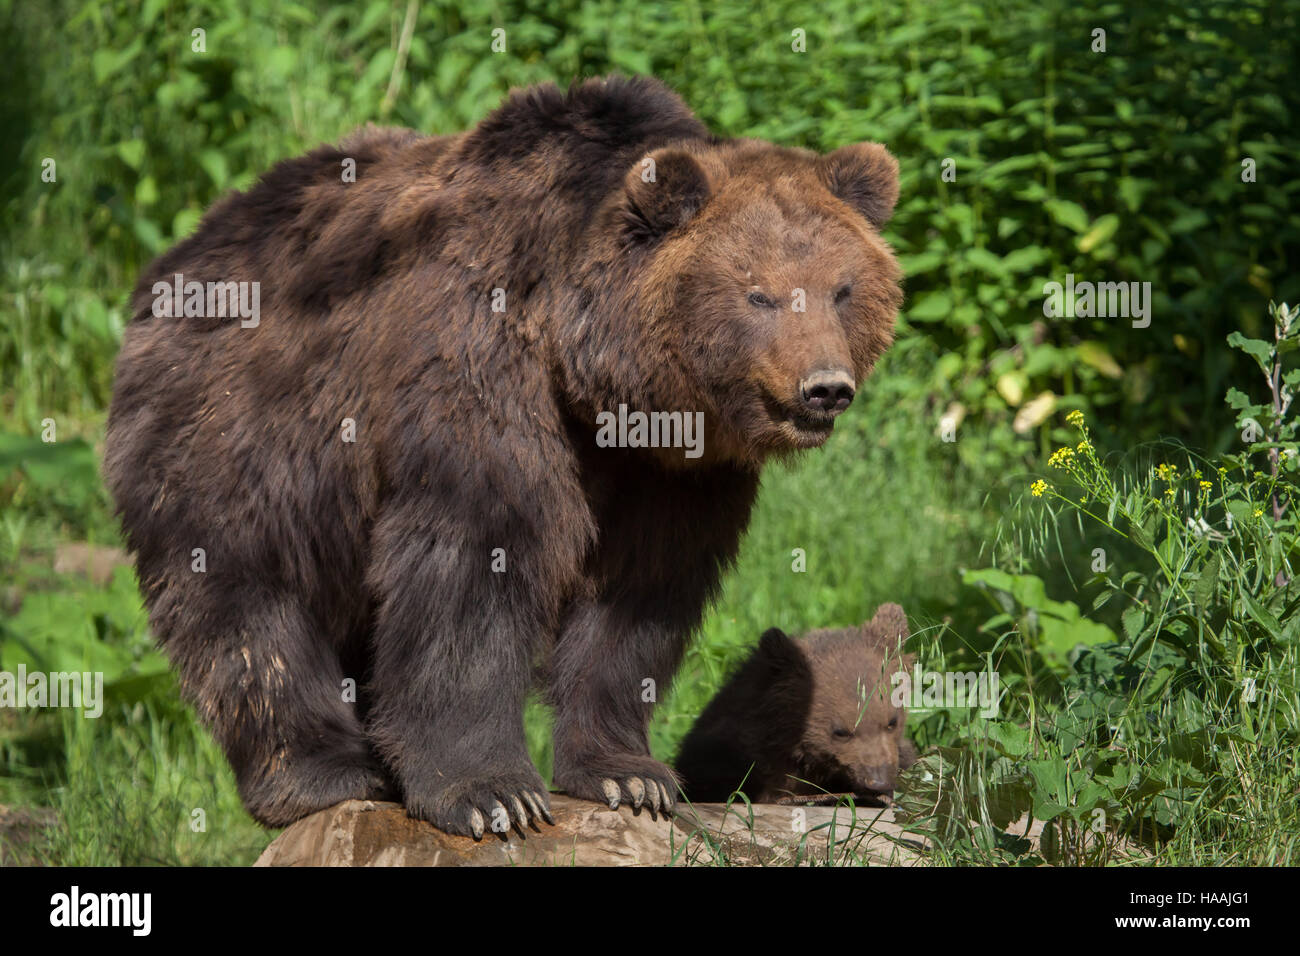 Quattro-mese-vecchio Kamchatka l'orso bruno (Ursus arctos beringianus) chiamato Bruno con sua madre la Kamchatka presso lo Zoo di Brno in Moravia del Sud, Repubblica Ceca. Th Foto Stock